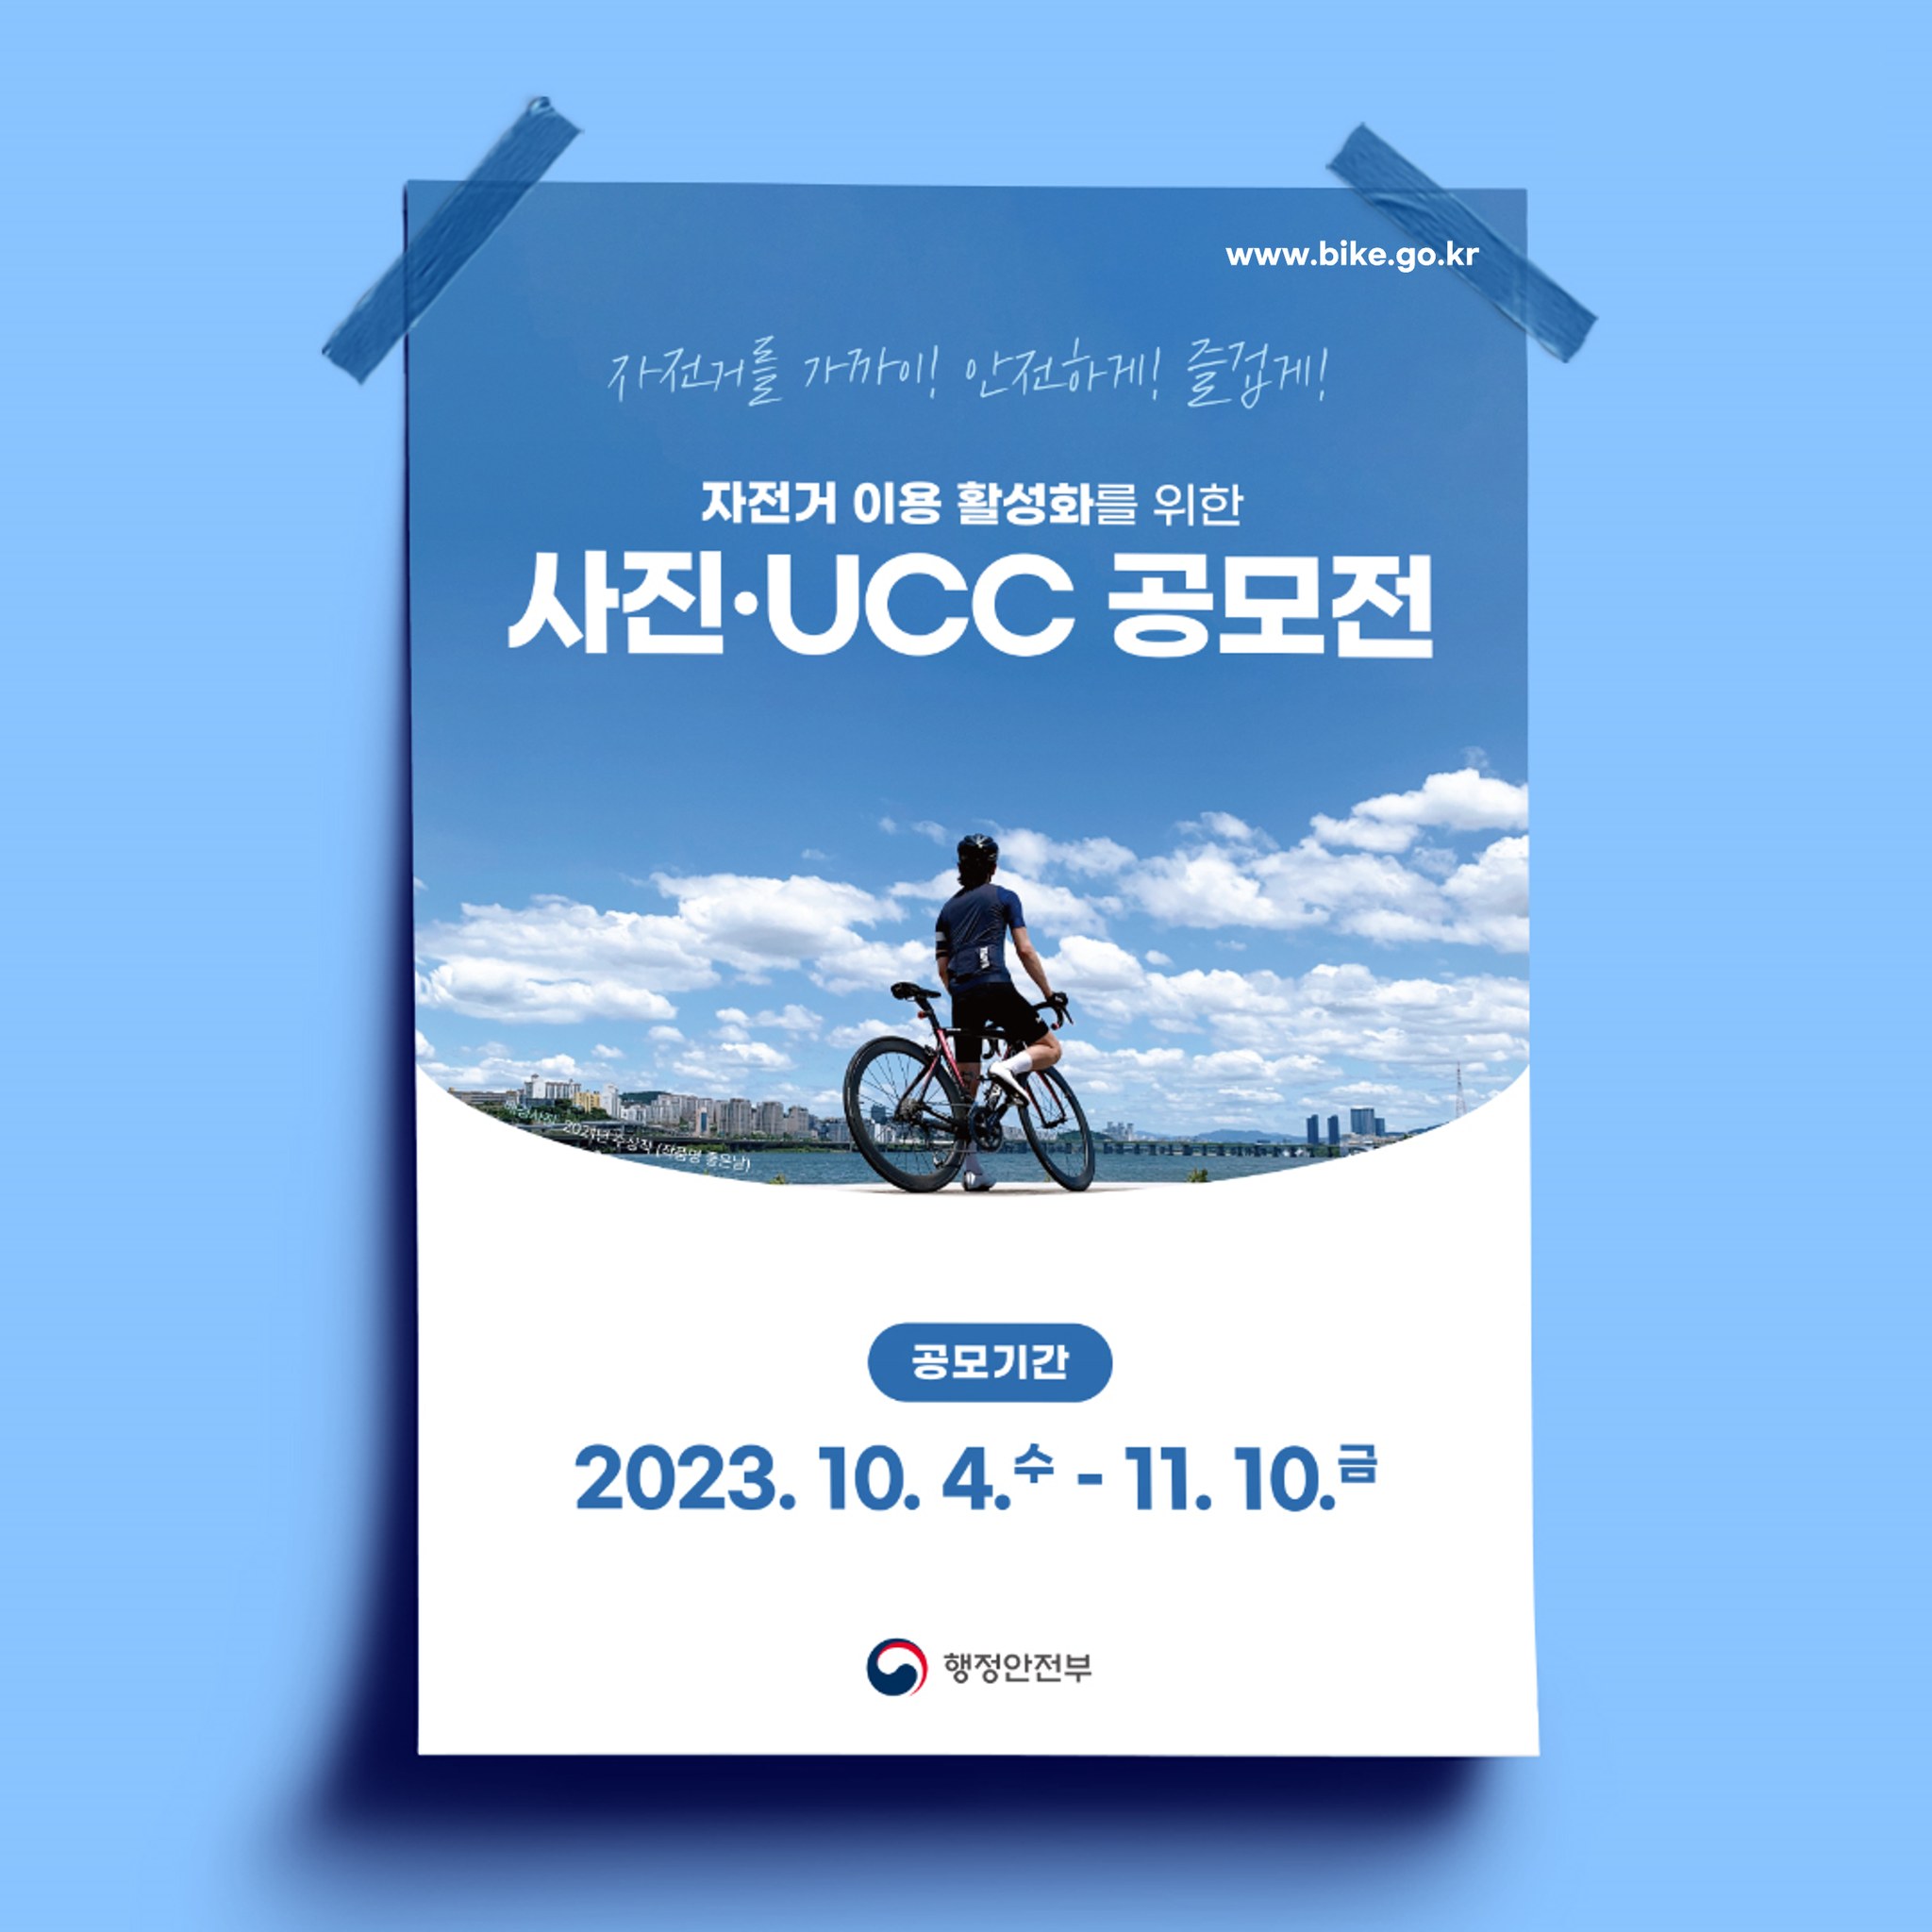 자전거 이용 활성화를 위한 사진·UCC 공모전 개최